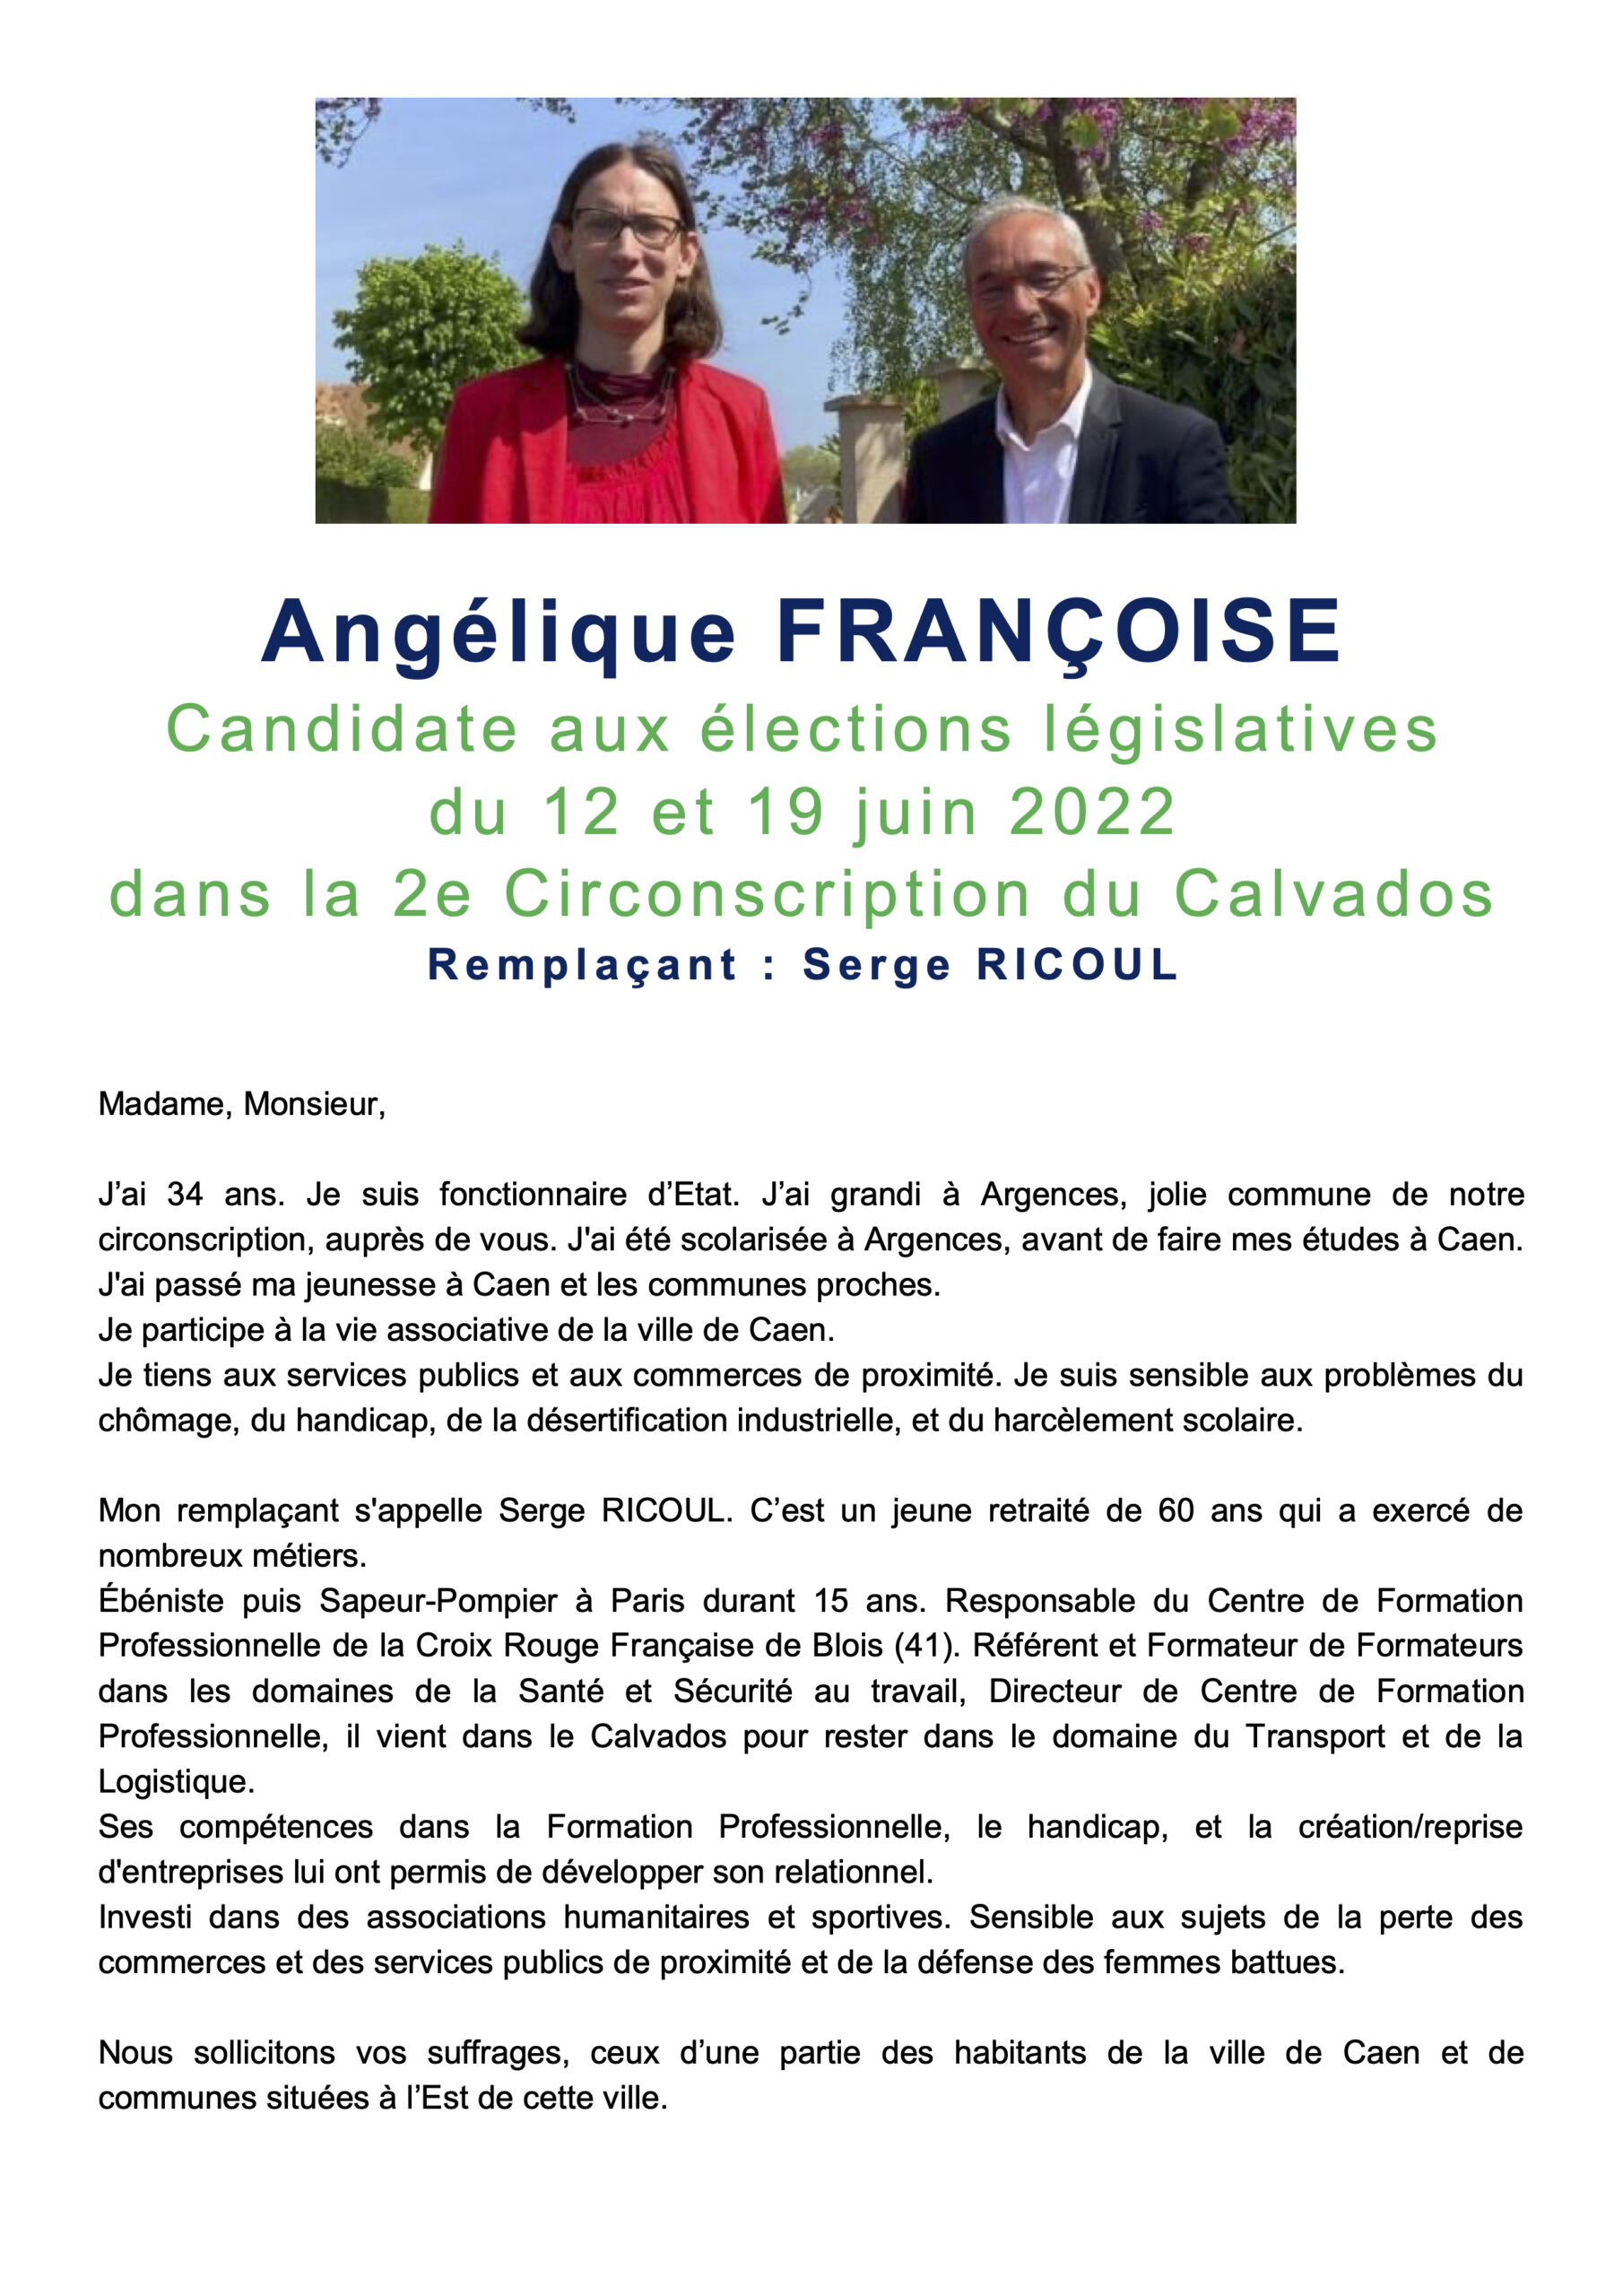 angelique-francoise-pf1